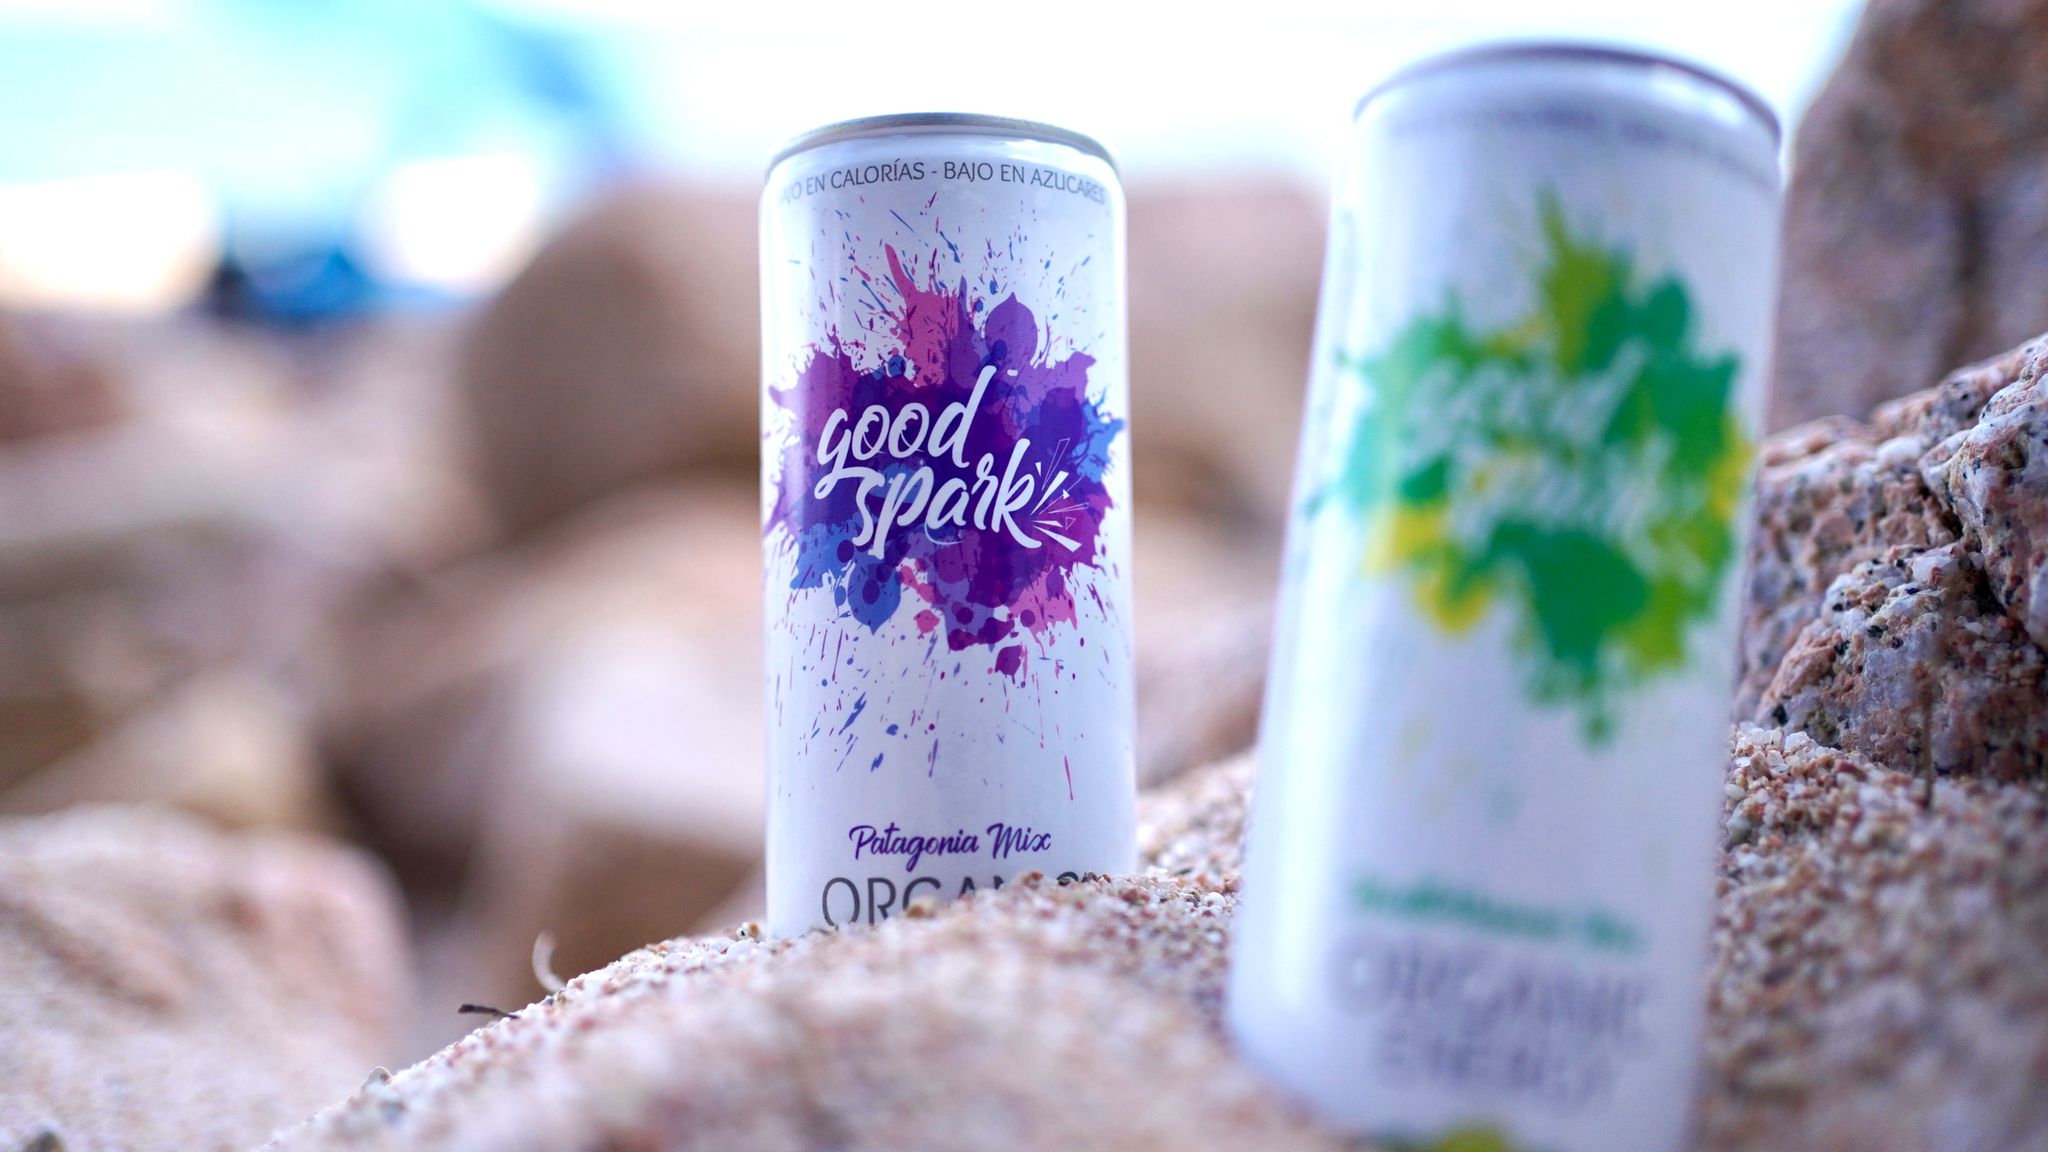 Orgánica, vegana y sostenible. Así es Good Spark, la nueva bebida energética que aterriza en el mercado español